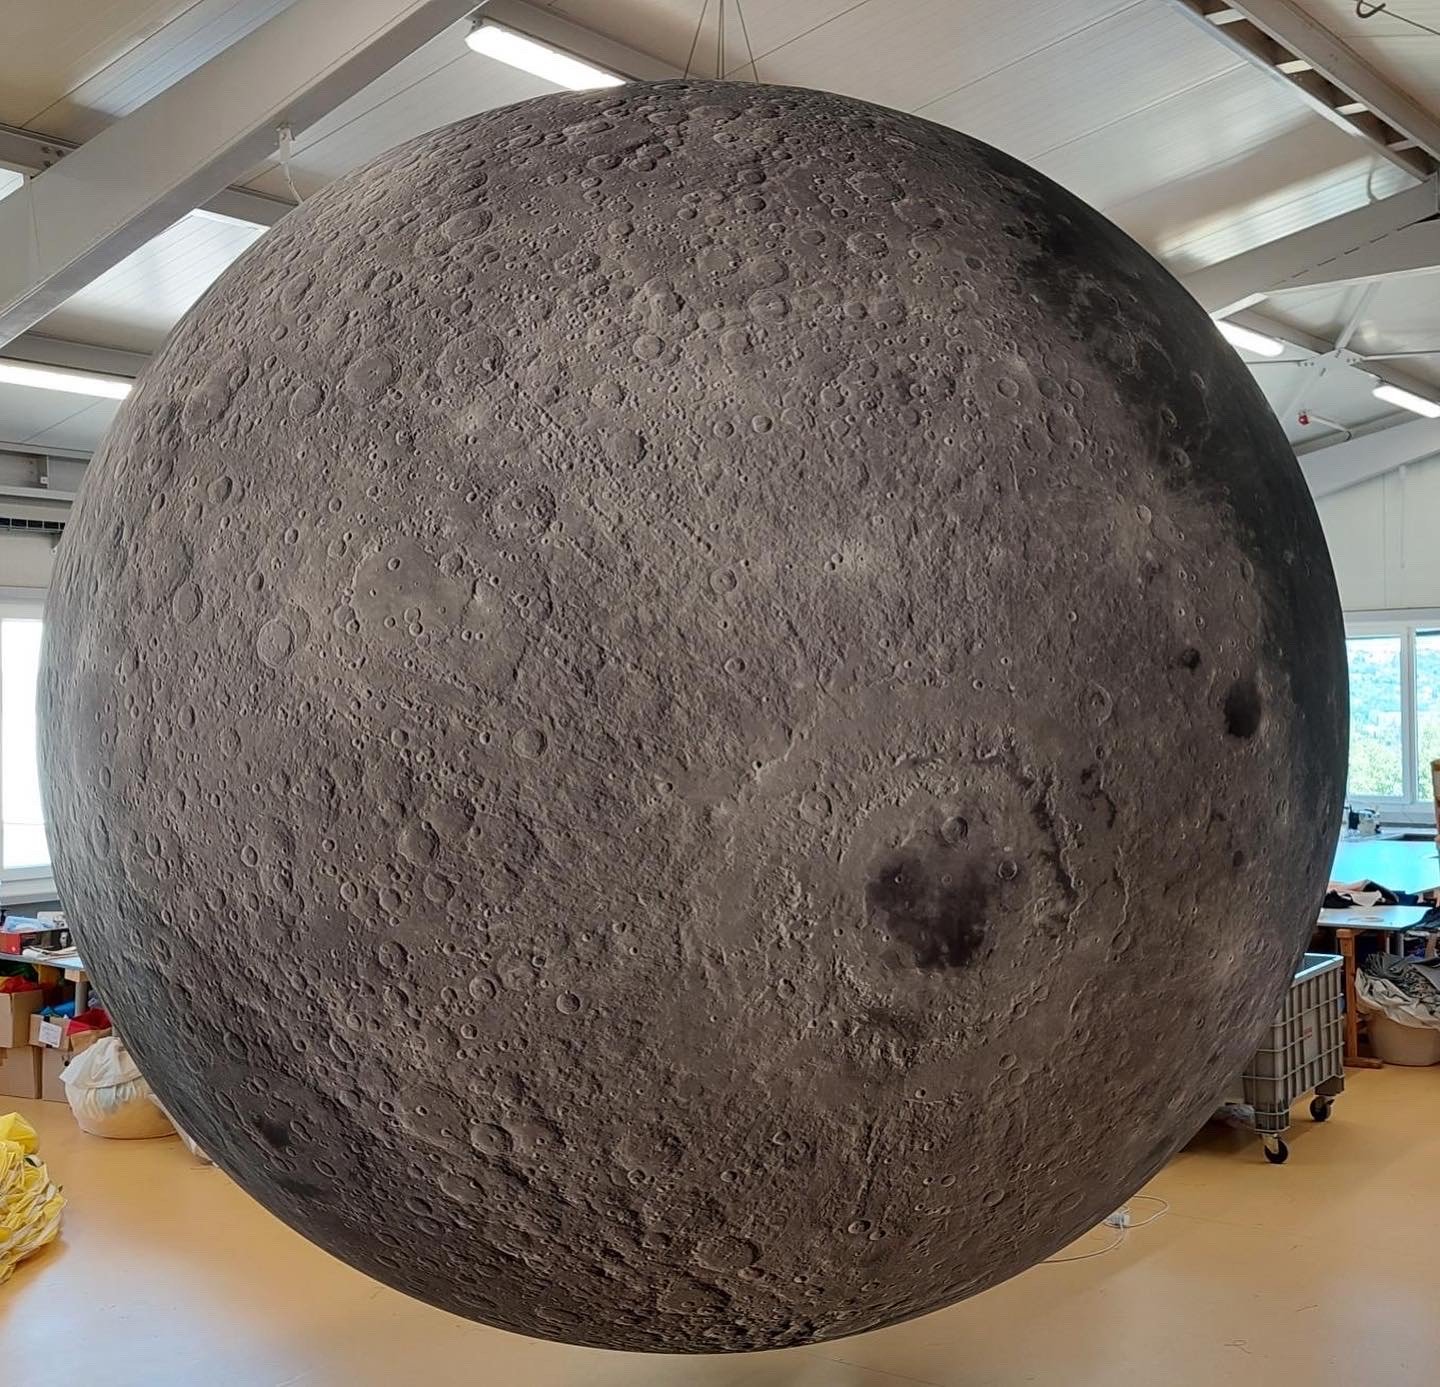 Giant Inflatable Moon